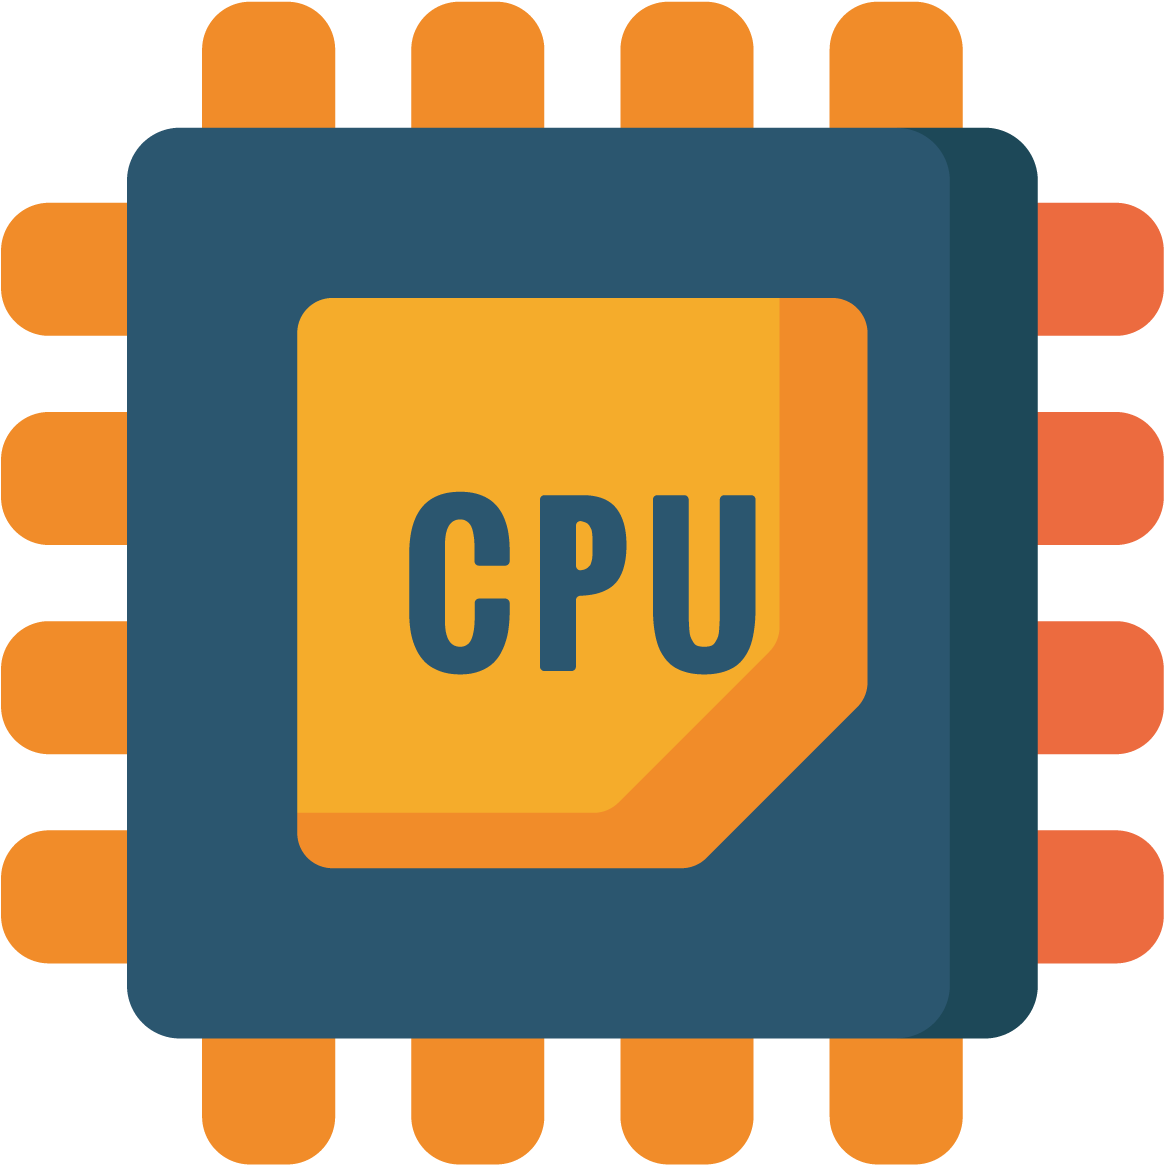 CPU - Central processing unit - ЦПУ - Центральный микропроцессор - Центральное процессорное устройство